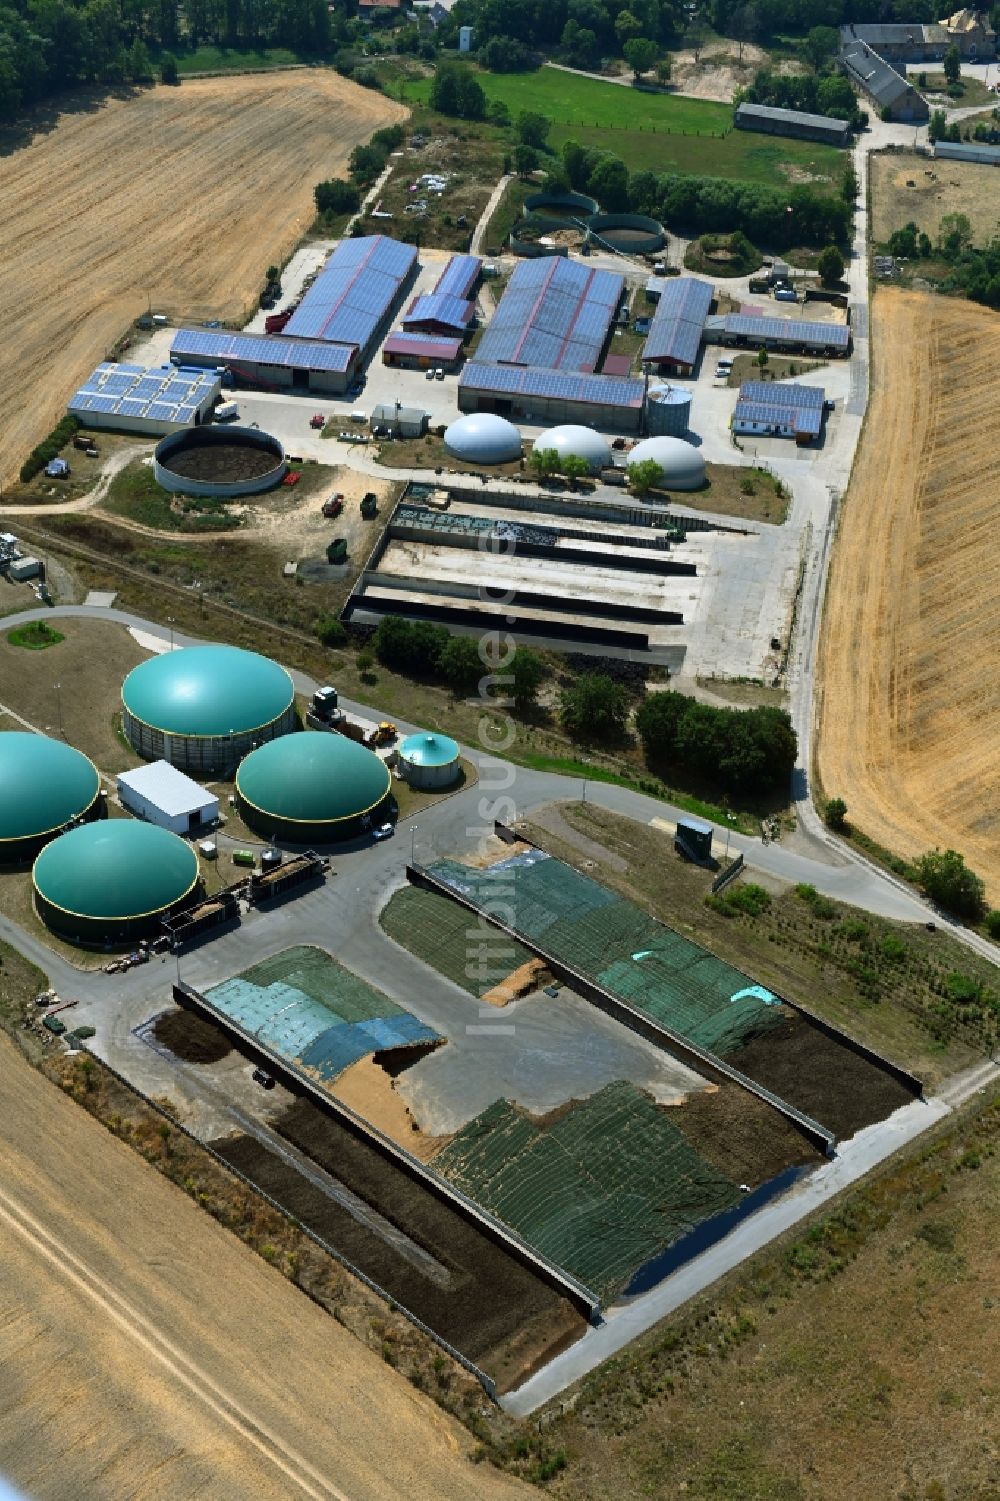 Naundorf von oben - Gebäude, Biogasanlage und Parkanlagen des Gutshauses und Herrenhauses in Naundorf im Bundesland Sachsen, Deutschland